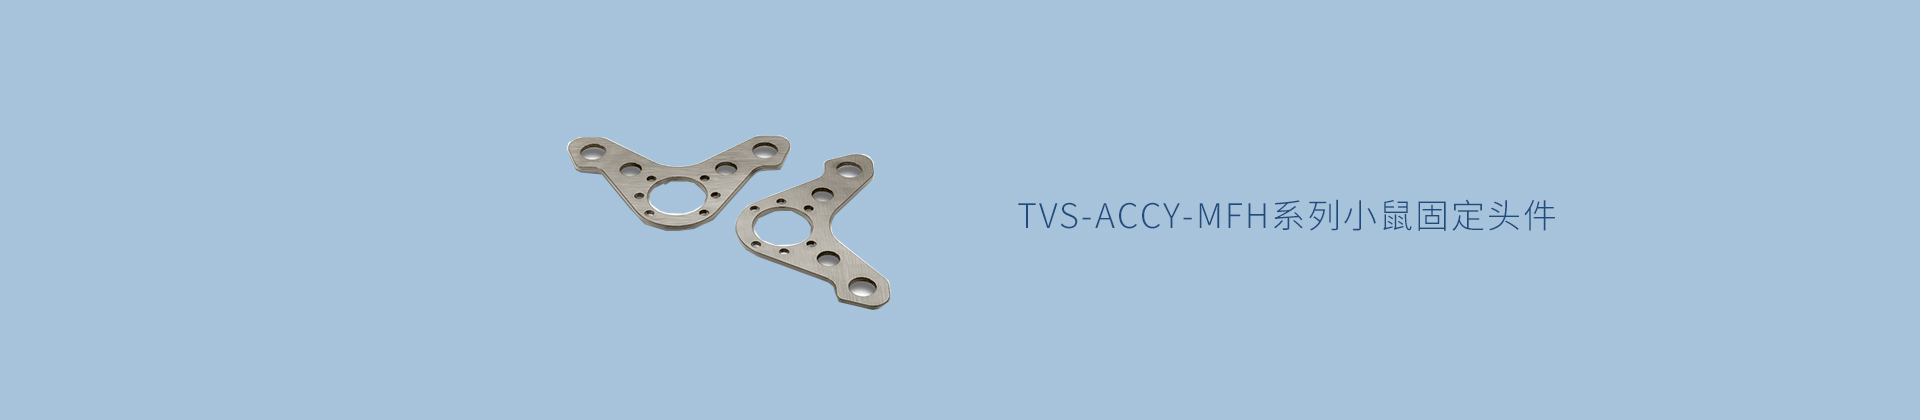 TVS-ACCY-MFH系列小鼠固定头件